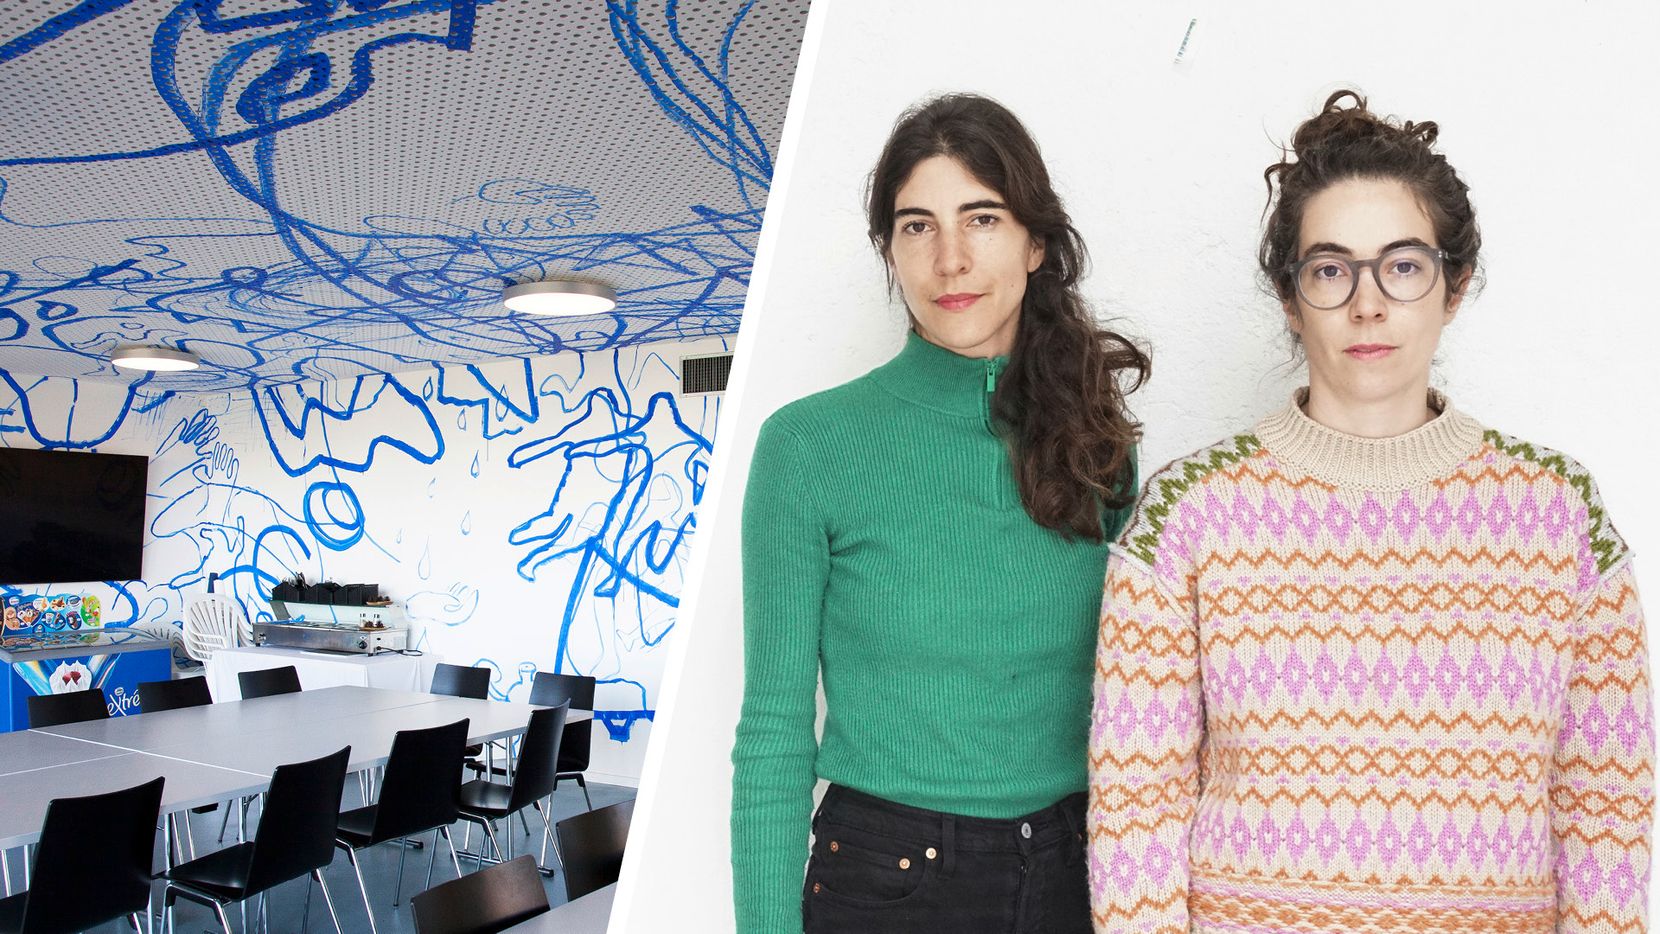 Bildkombo aus einem Foto links von dem umstrittenen Werk «Circuit Flow» und rechts daneben einem Foto der beiden Künstlerinnen Stefanie Kägi und Maureen Kägi.